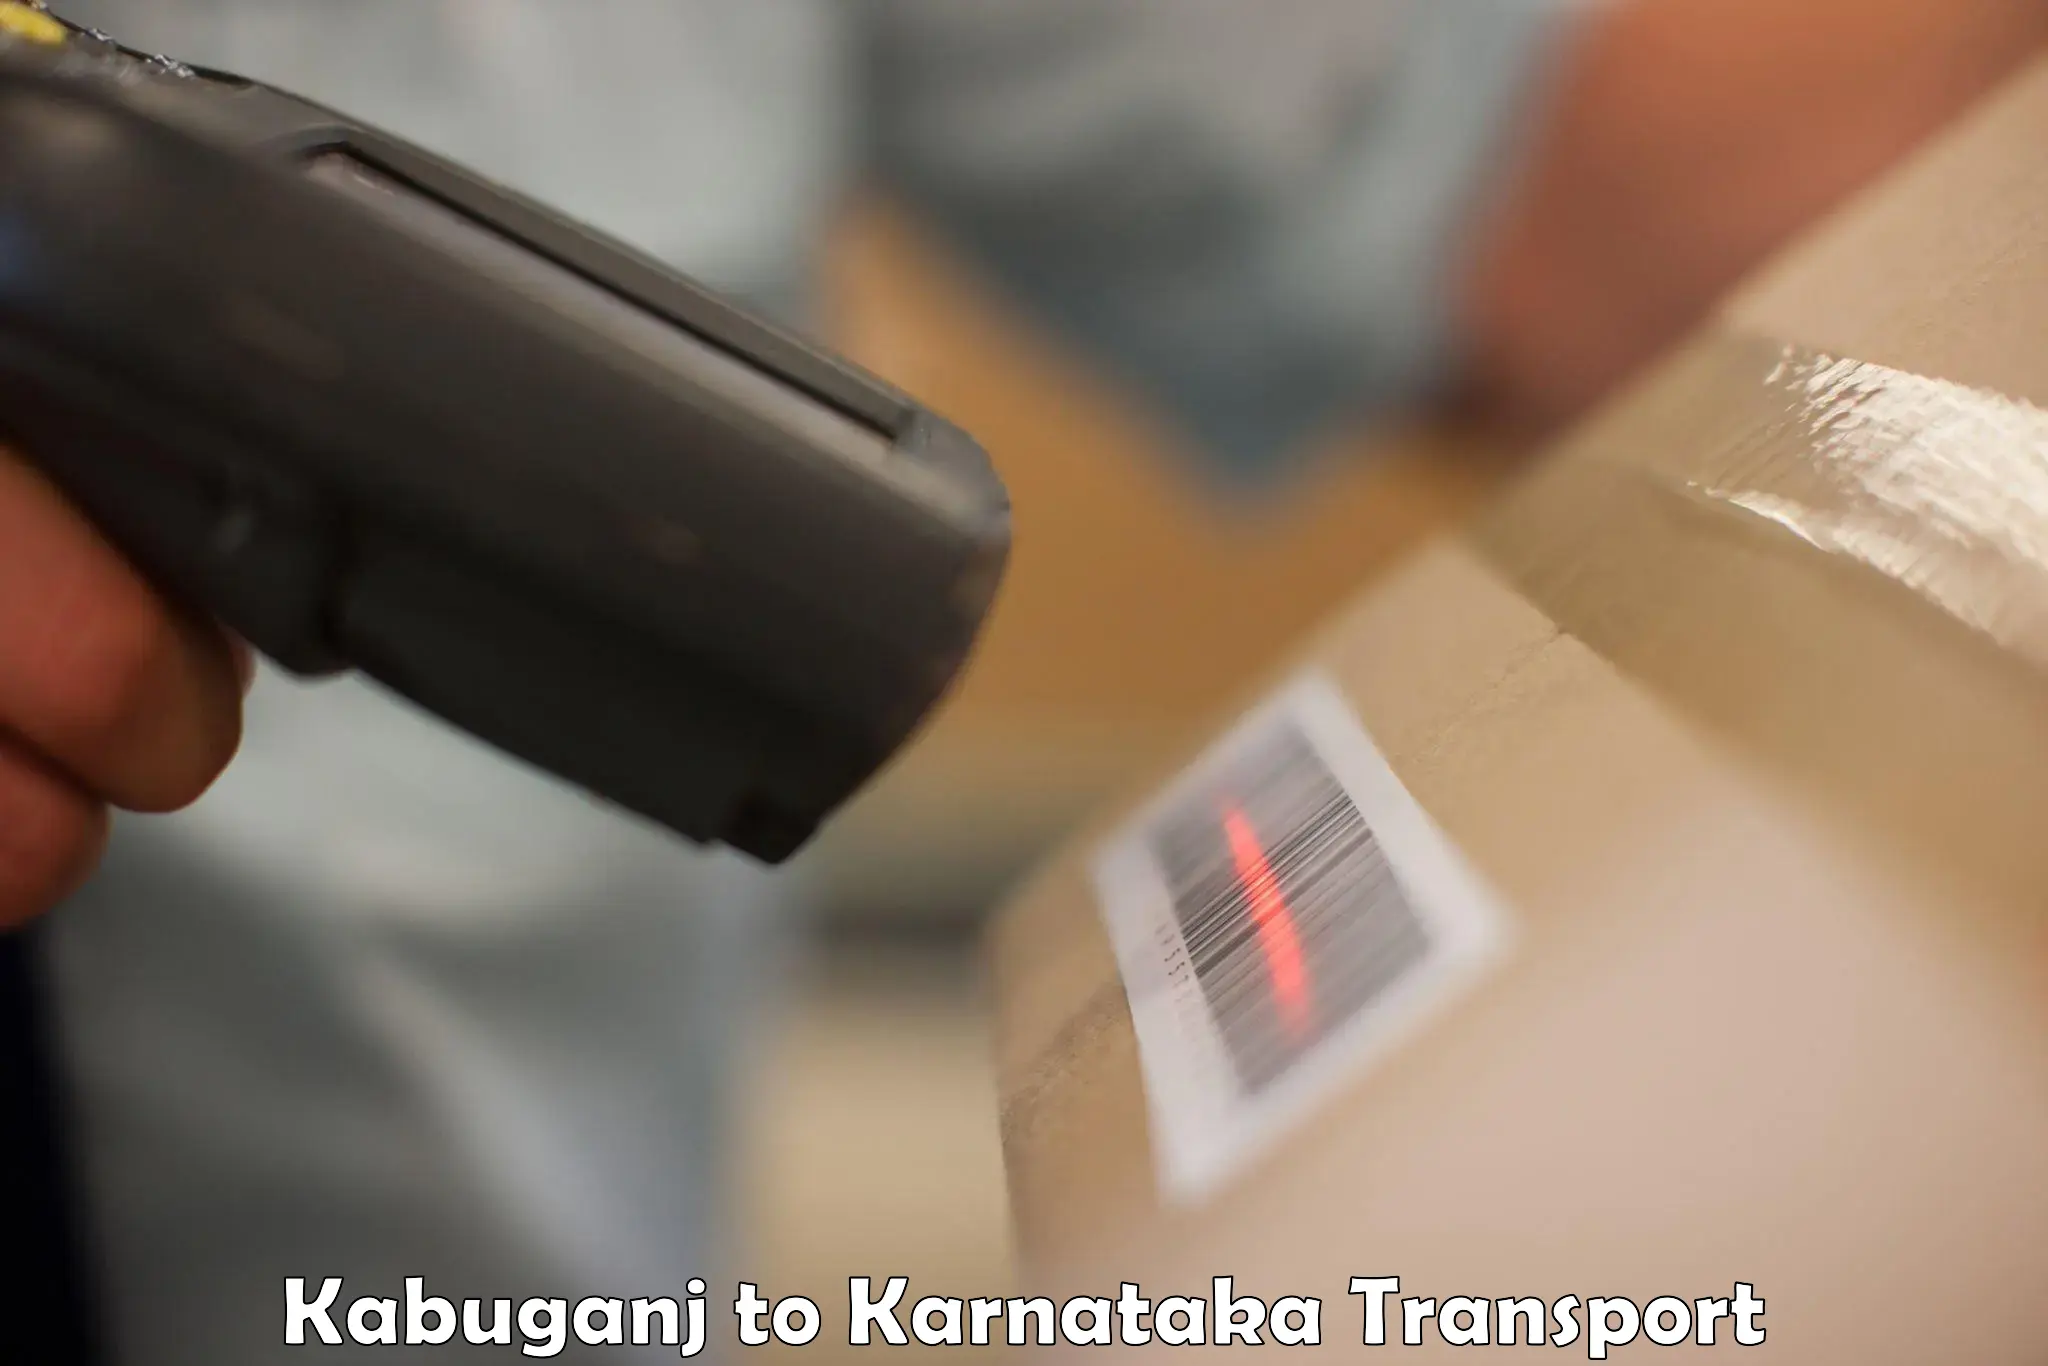 Daily transport service Kabuganj to Chikkamagaluru